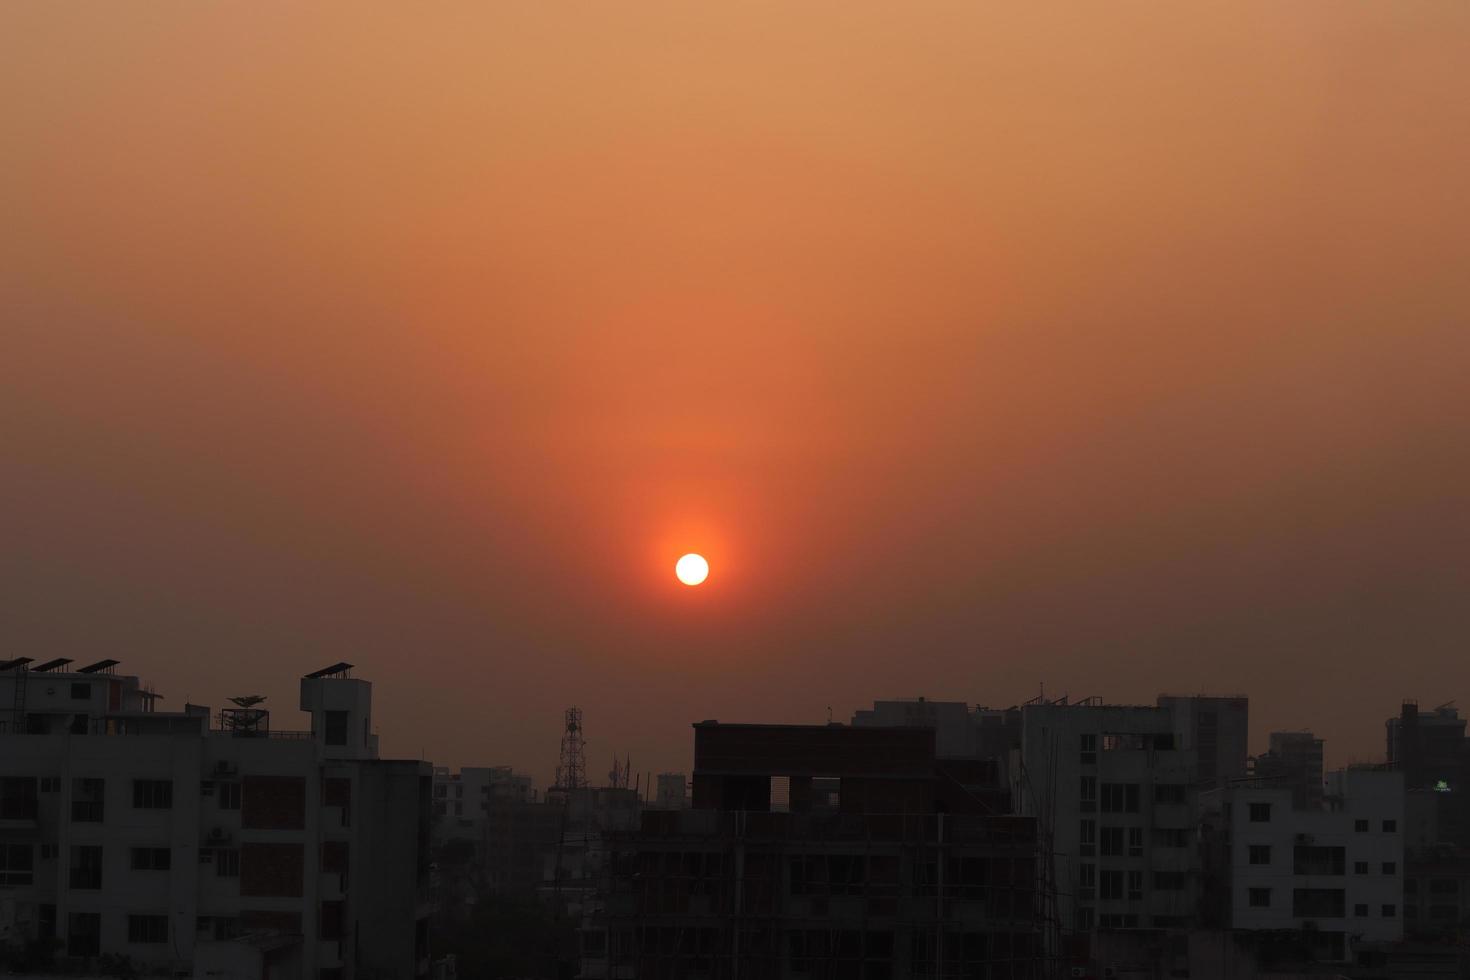 fotografía de puesta de sol en el fondo del paisaje urbano. foto del atardecer o amanecer de un área urbana. hermoso y cálido paisaje de puesta de sol en dhaka, bangladesh. hermoso sol rojo antes del amanecer.